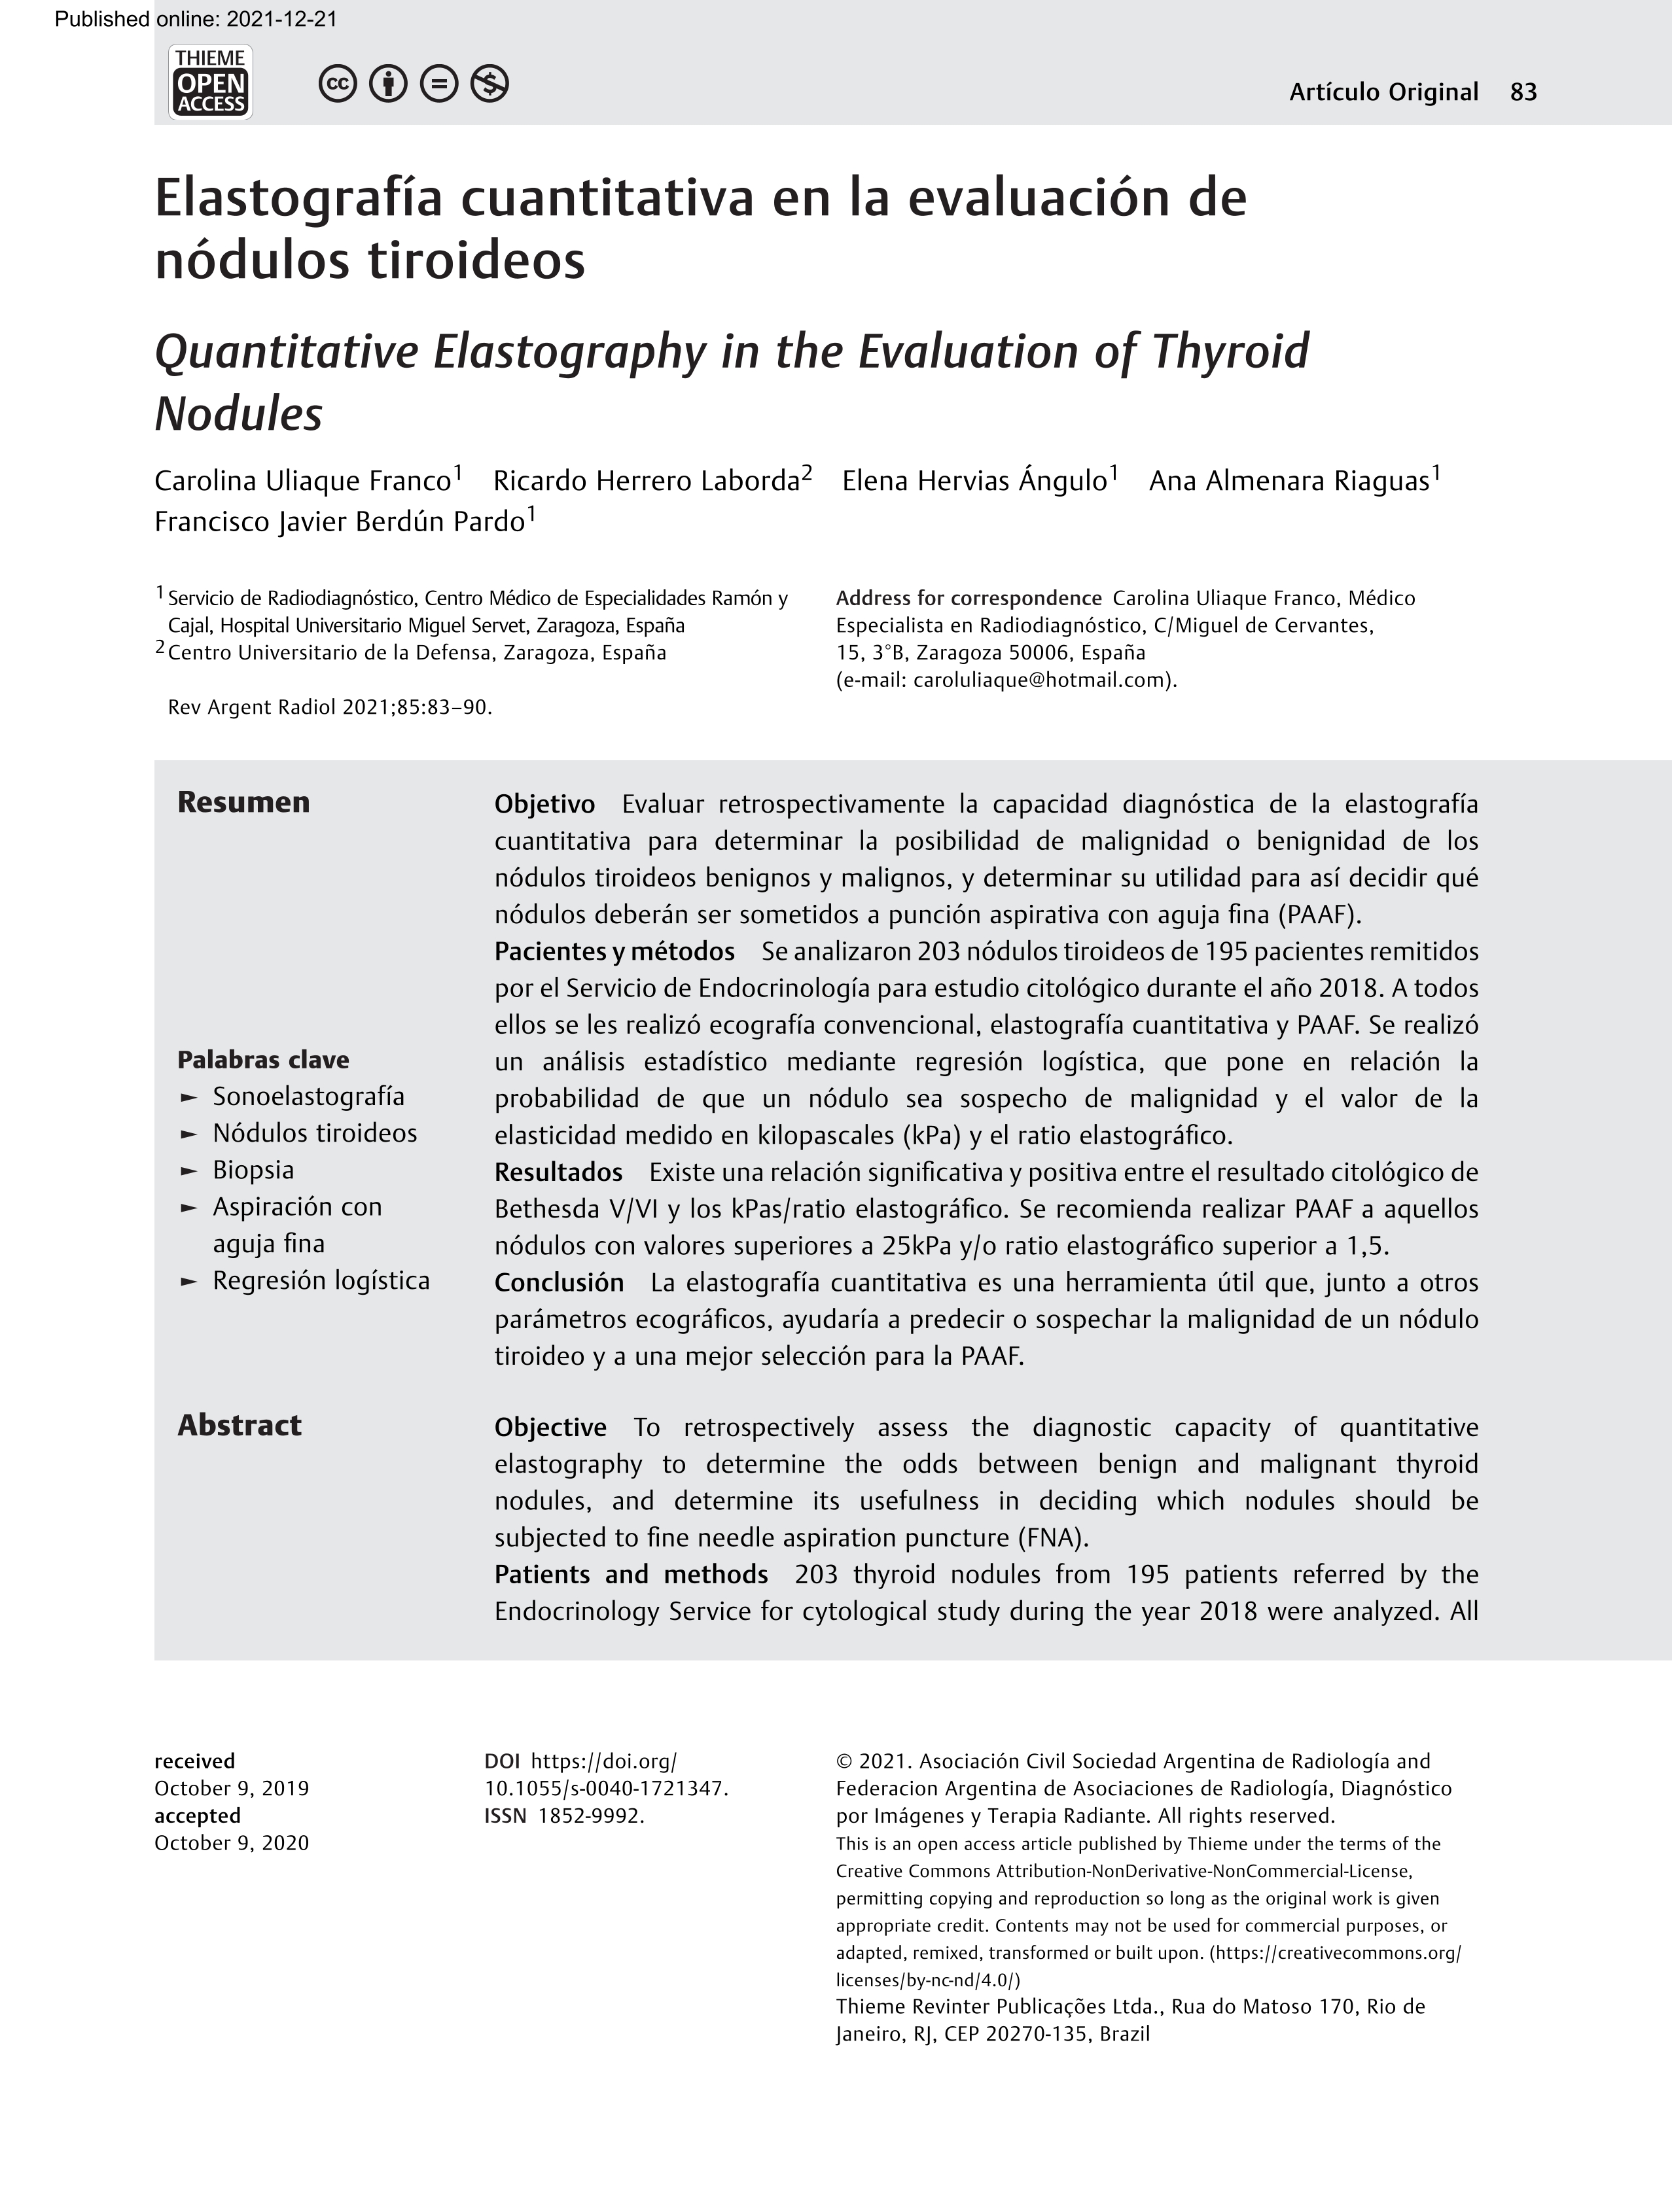 Elastografía cuantitativa en la evaluación de nódulos tiroideos